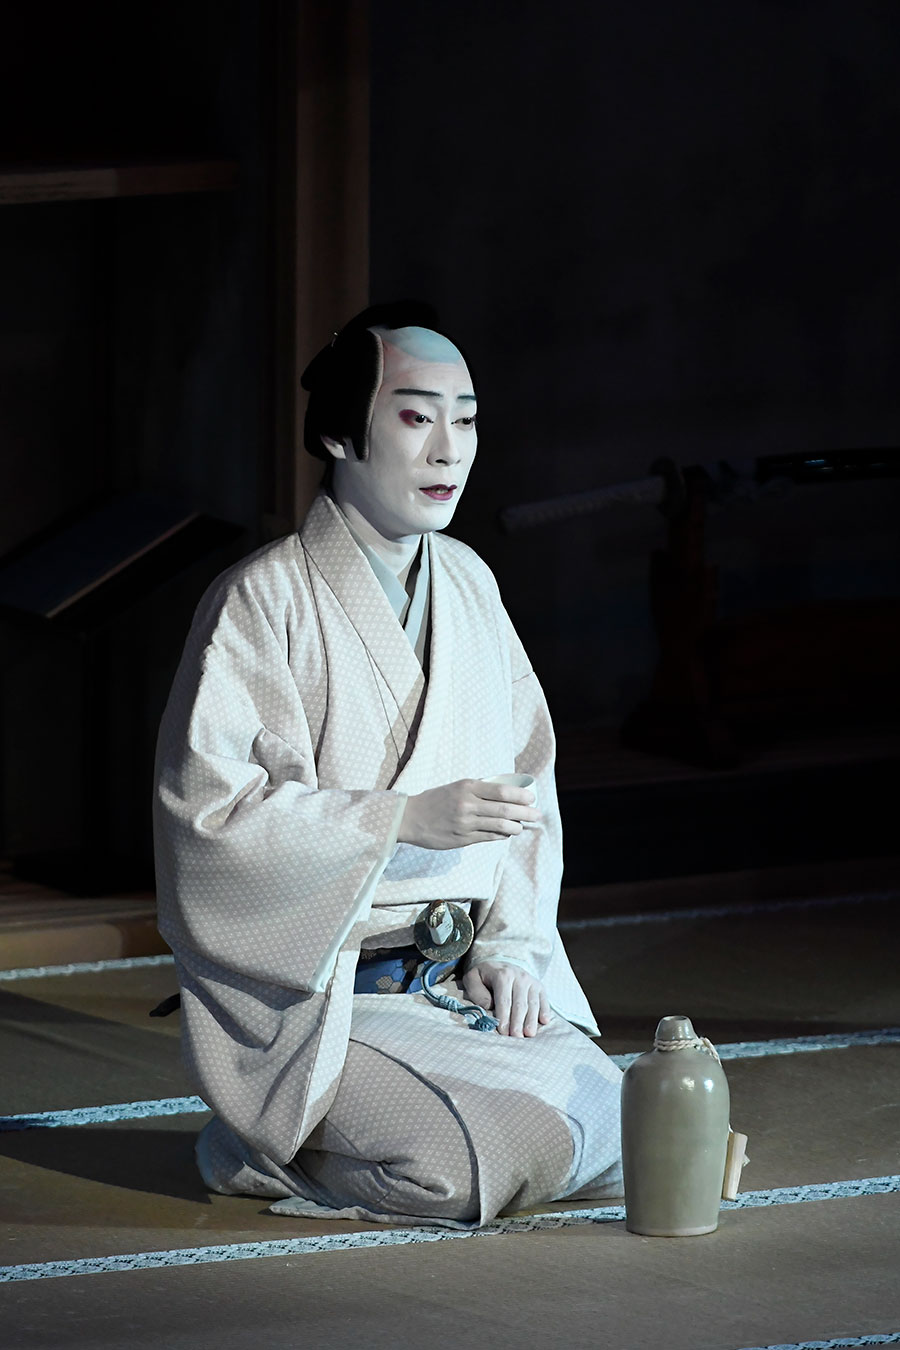 2ページ目 劇場へいらして と心からは言えないーー 歌舞伎俳優 坂東巳之助が今 思うこと 歌舞伎の今をたずねる